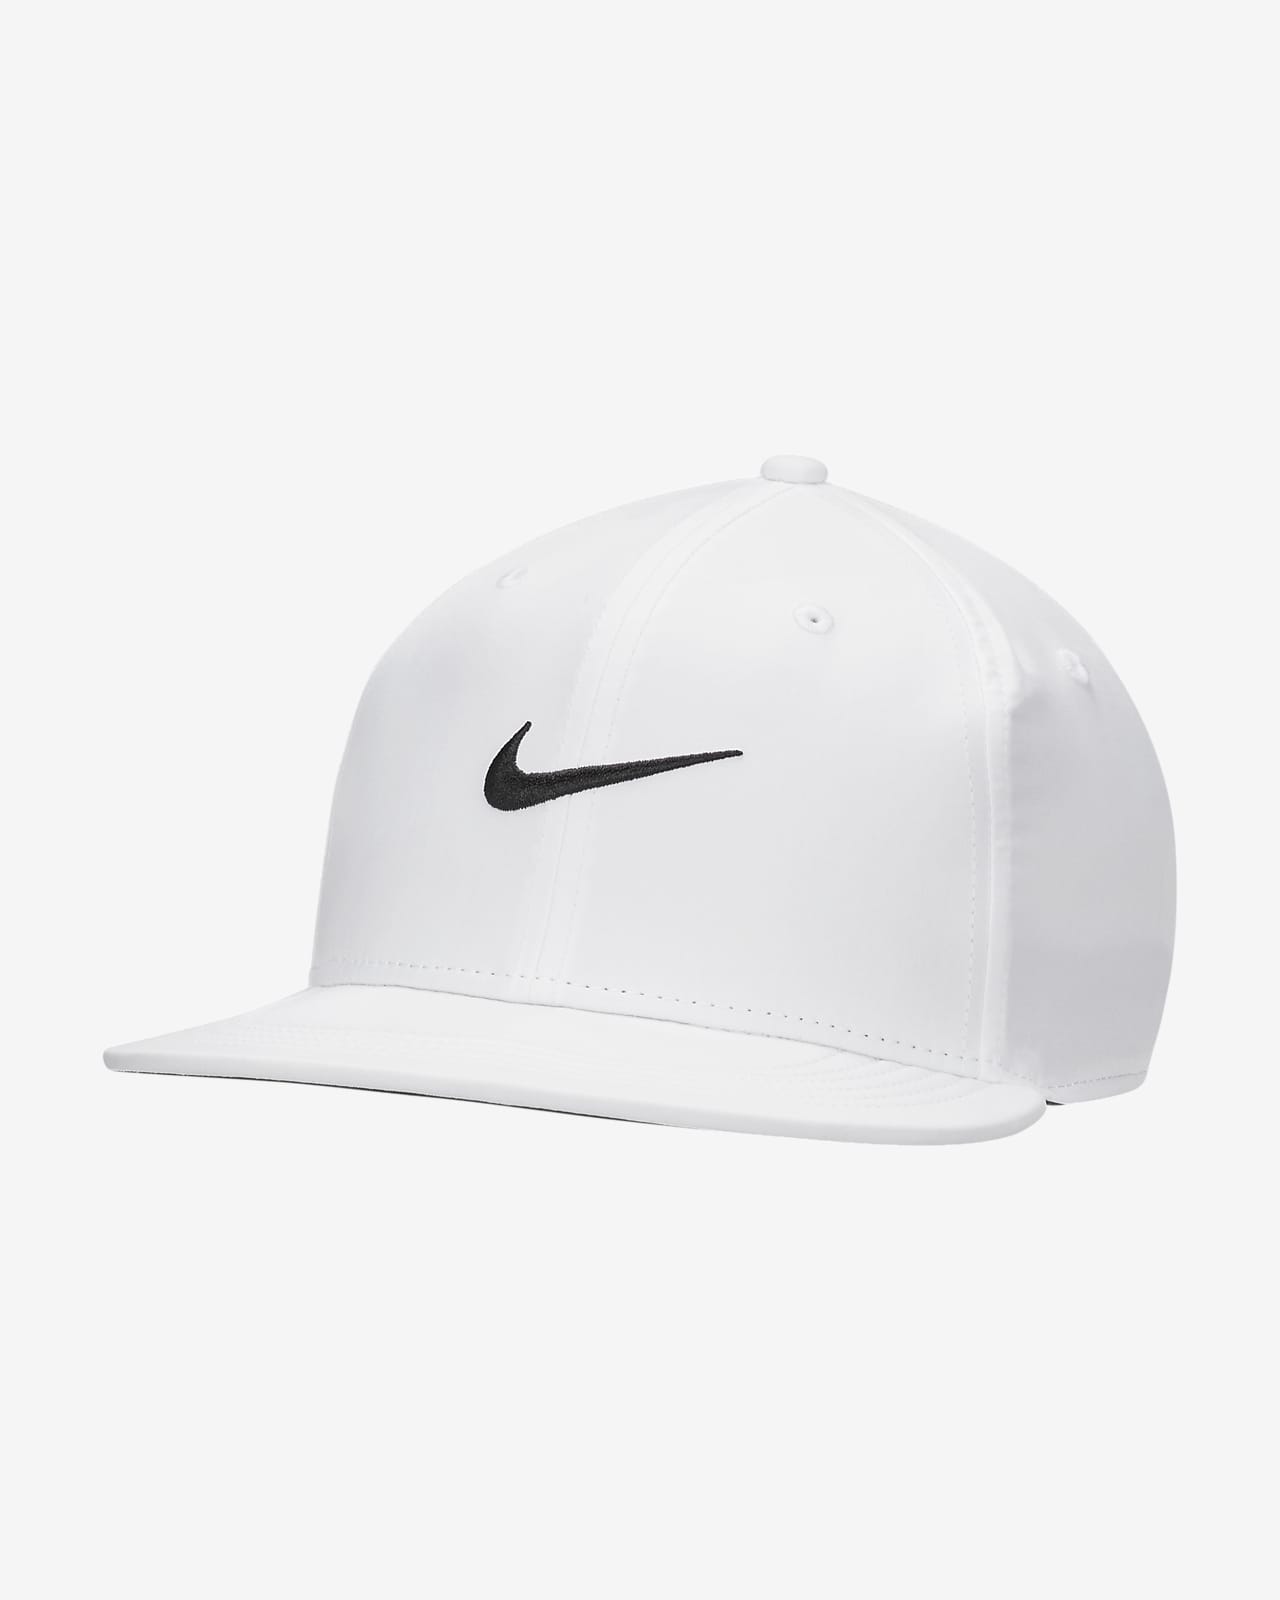 Nike Pro 硬挺版型圓形帽沿帽款